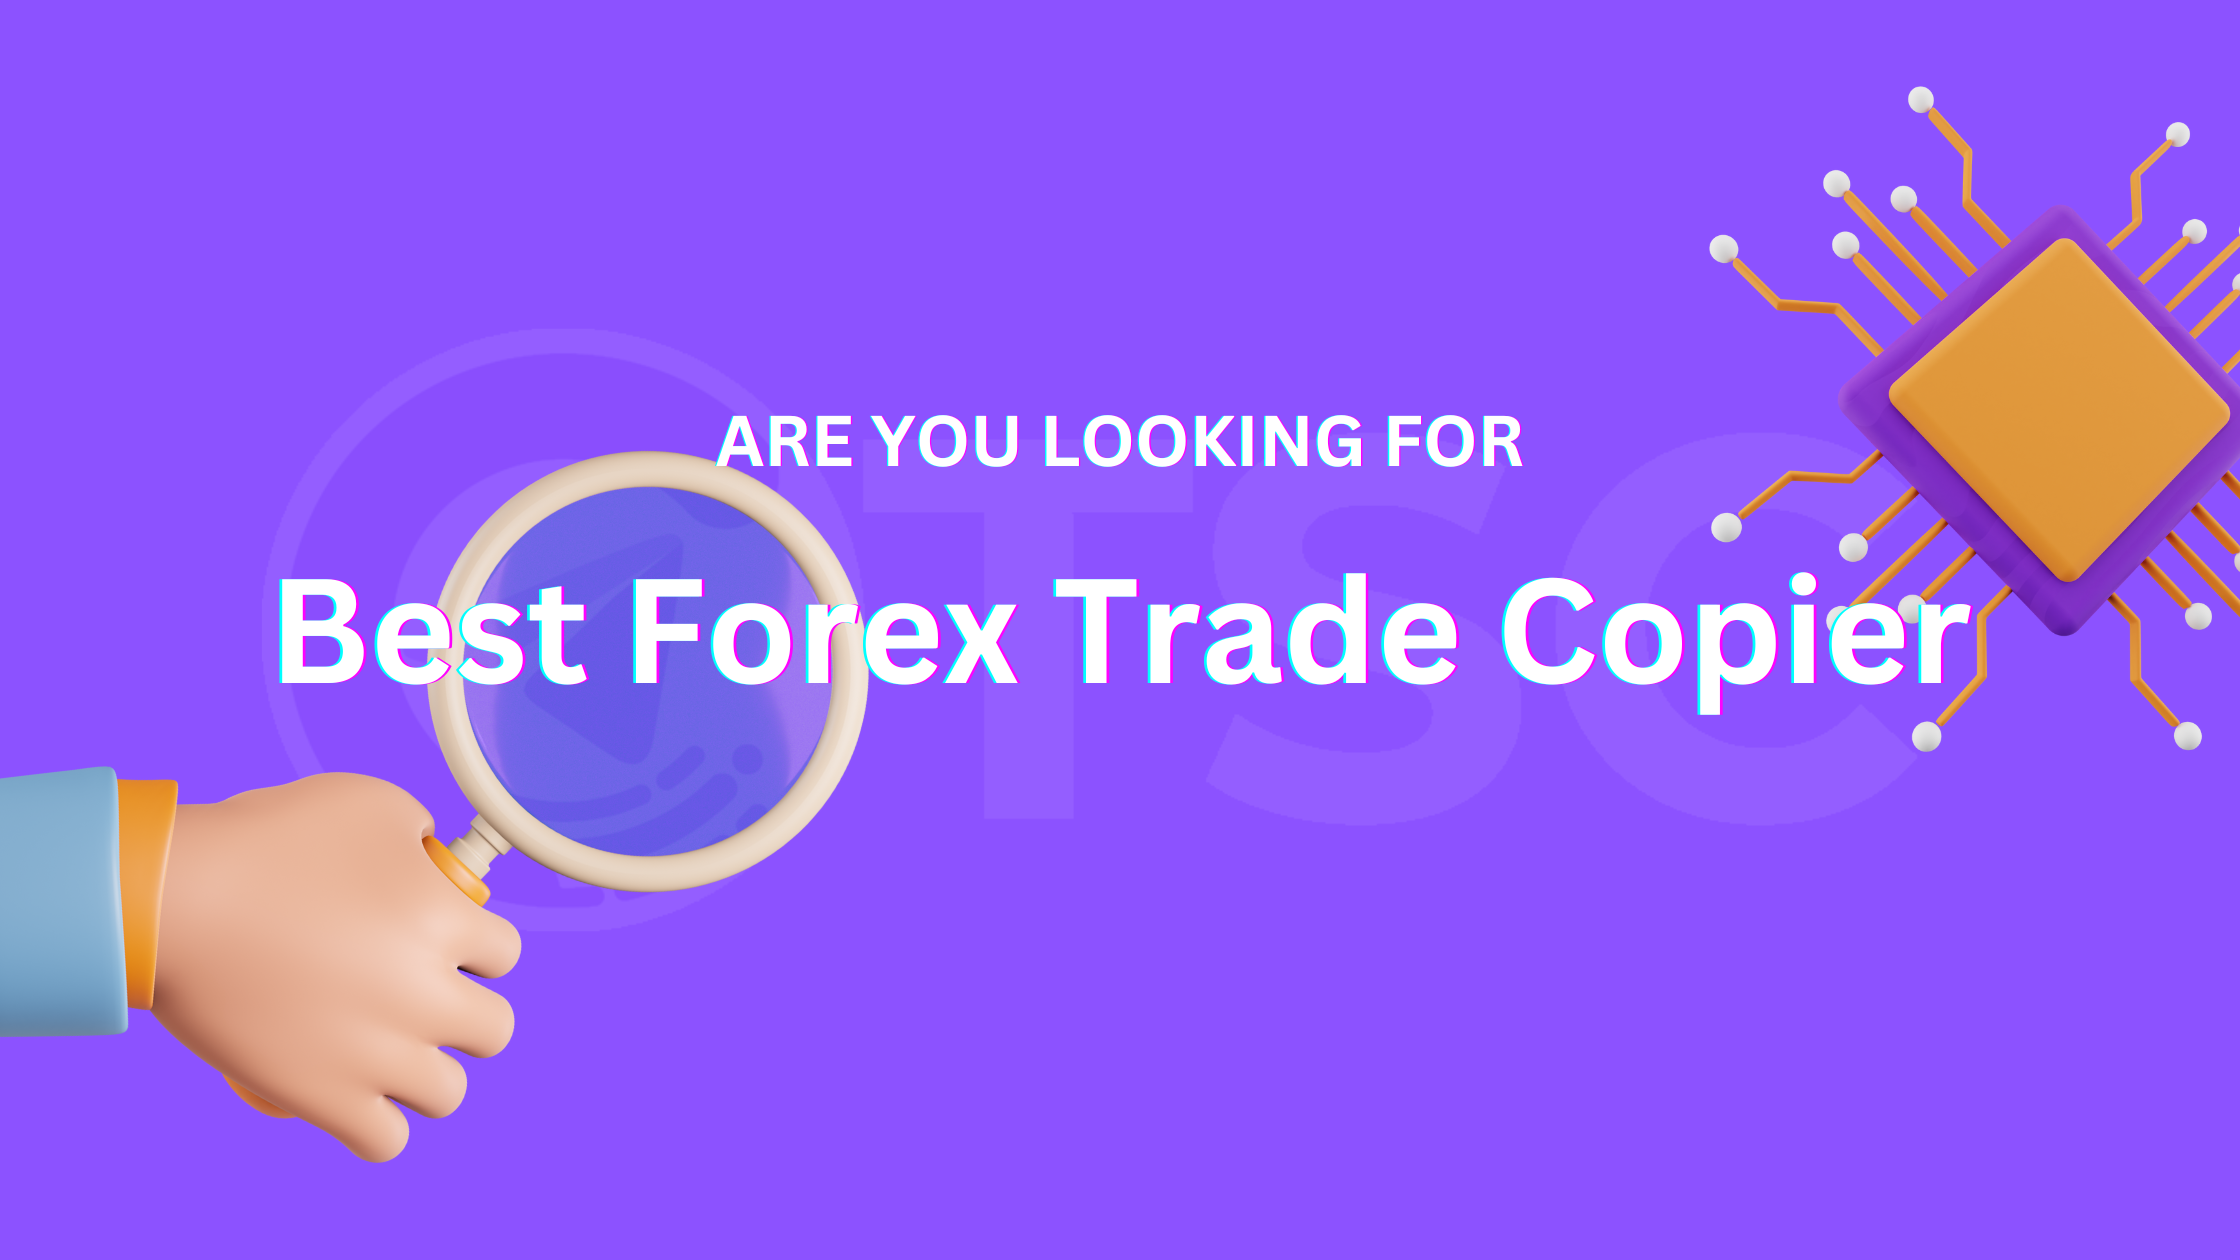 forex trade copier service